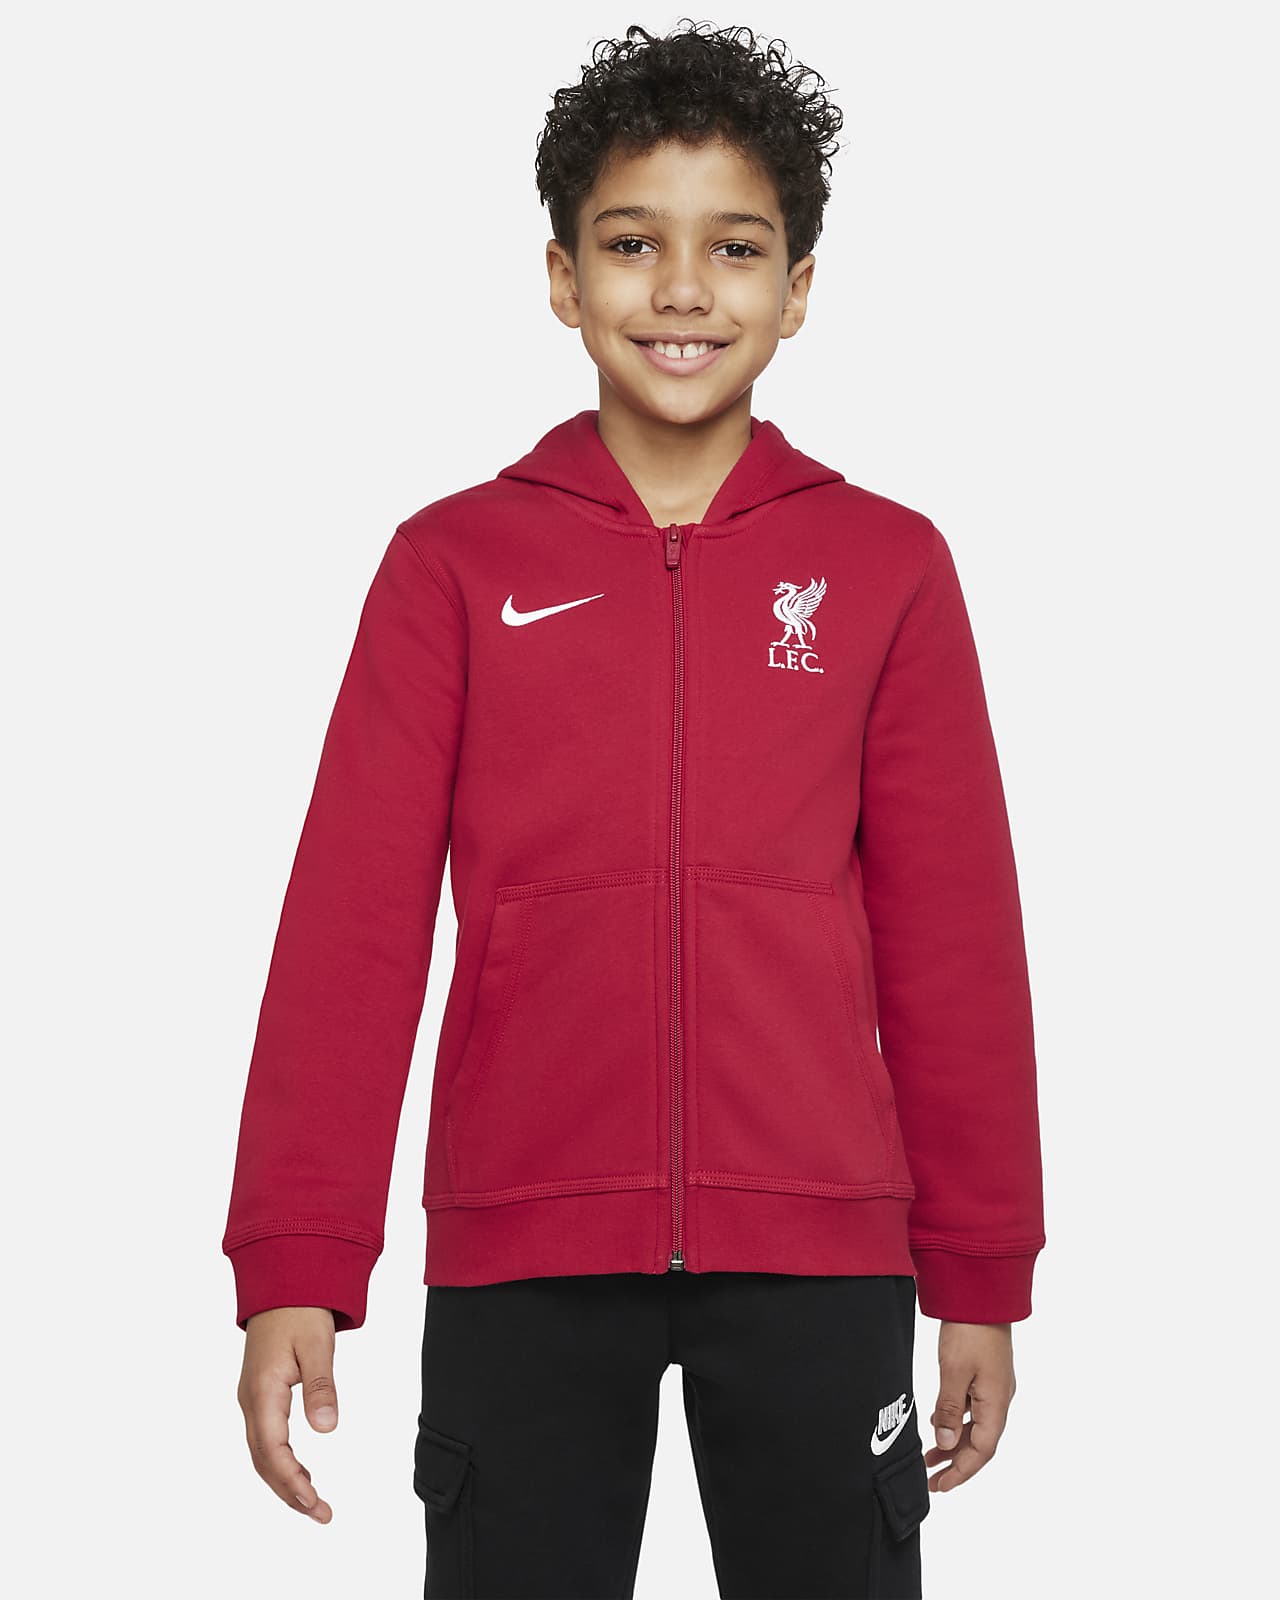 Flísová mikina Liverpool FC s kapucí a zipem po celé délce pro větší děti